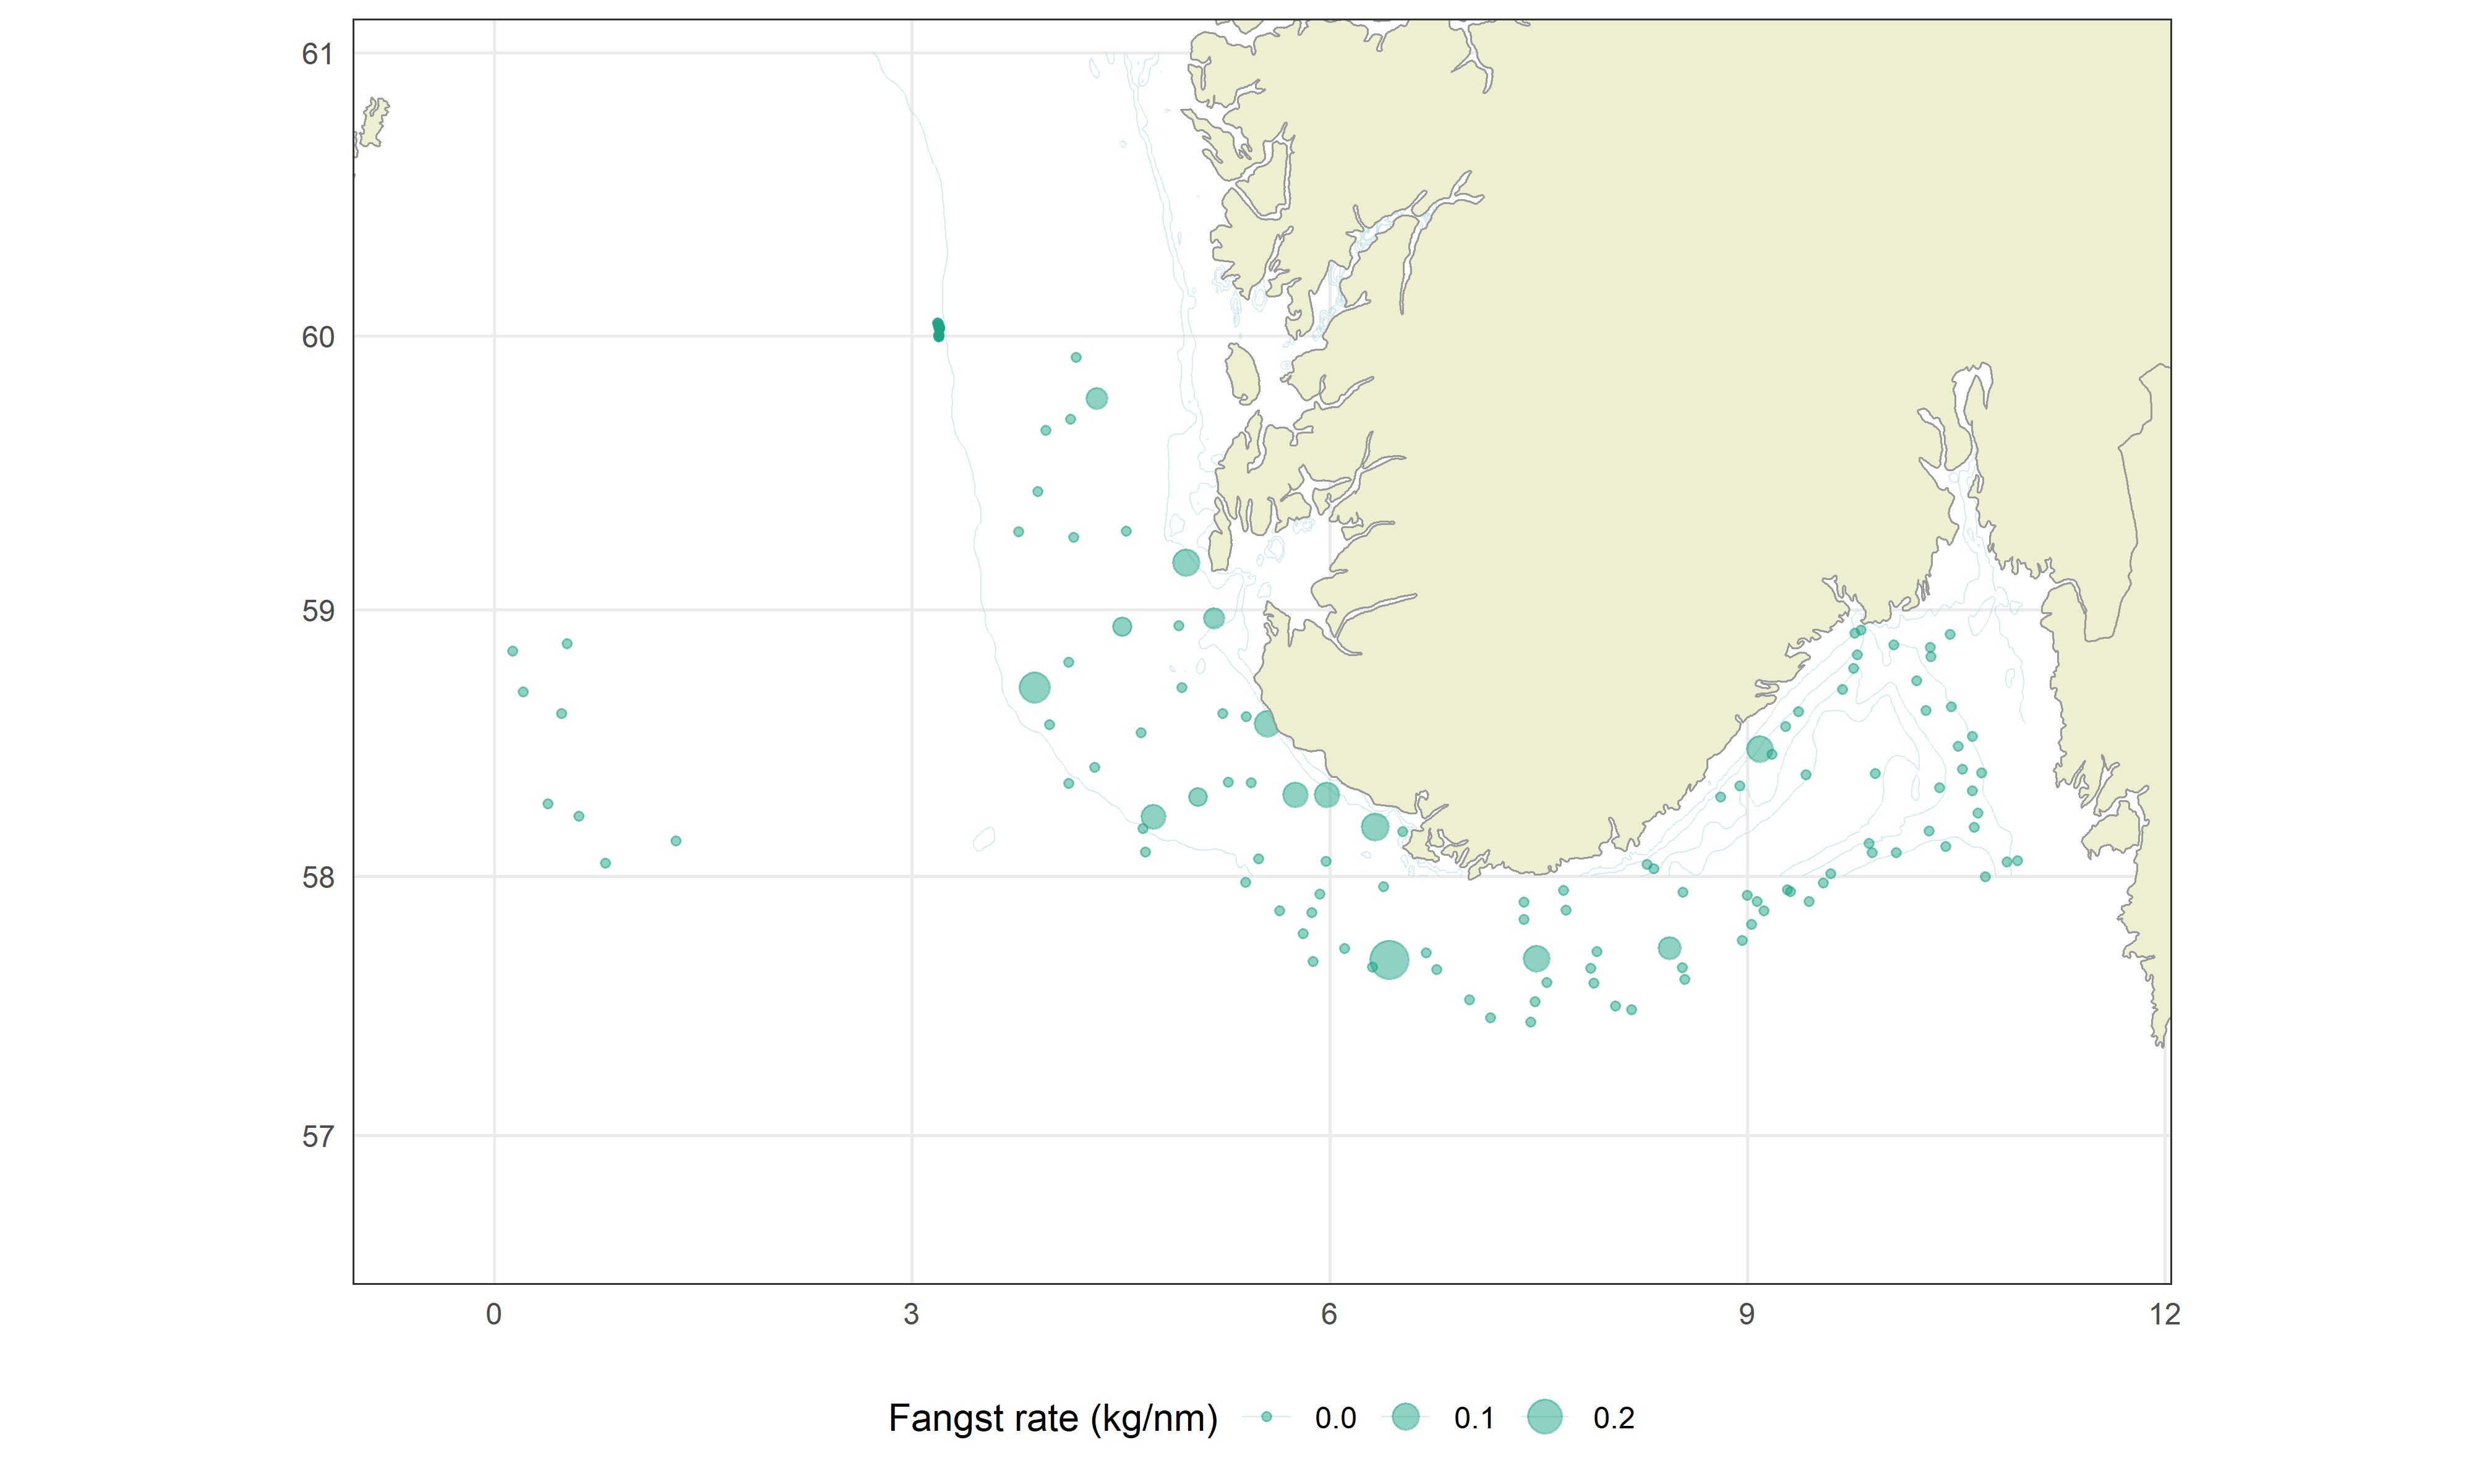 Skala for boblestørrelse (fangstrate; kilo per nautisk mil): Minste boble til venstre: 0,0, midten: 0,1 og største til høyre: 0,2 kilo per nautiske mil.